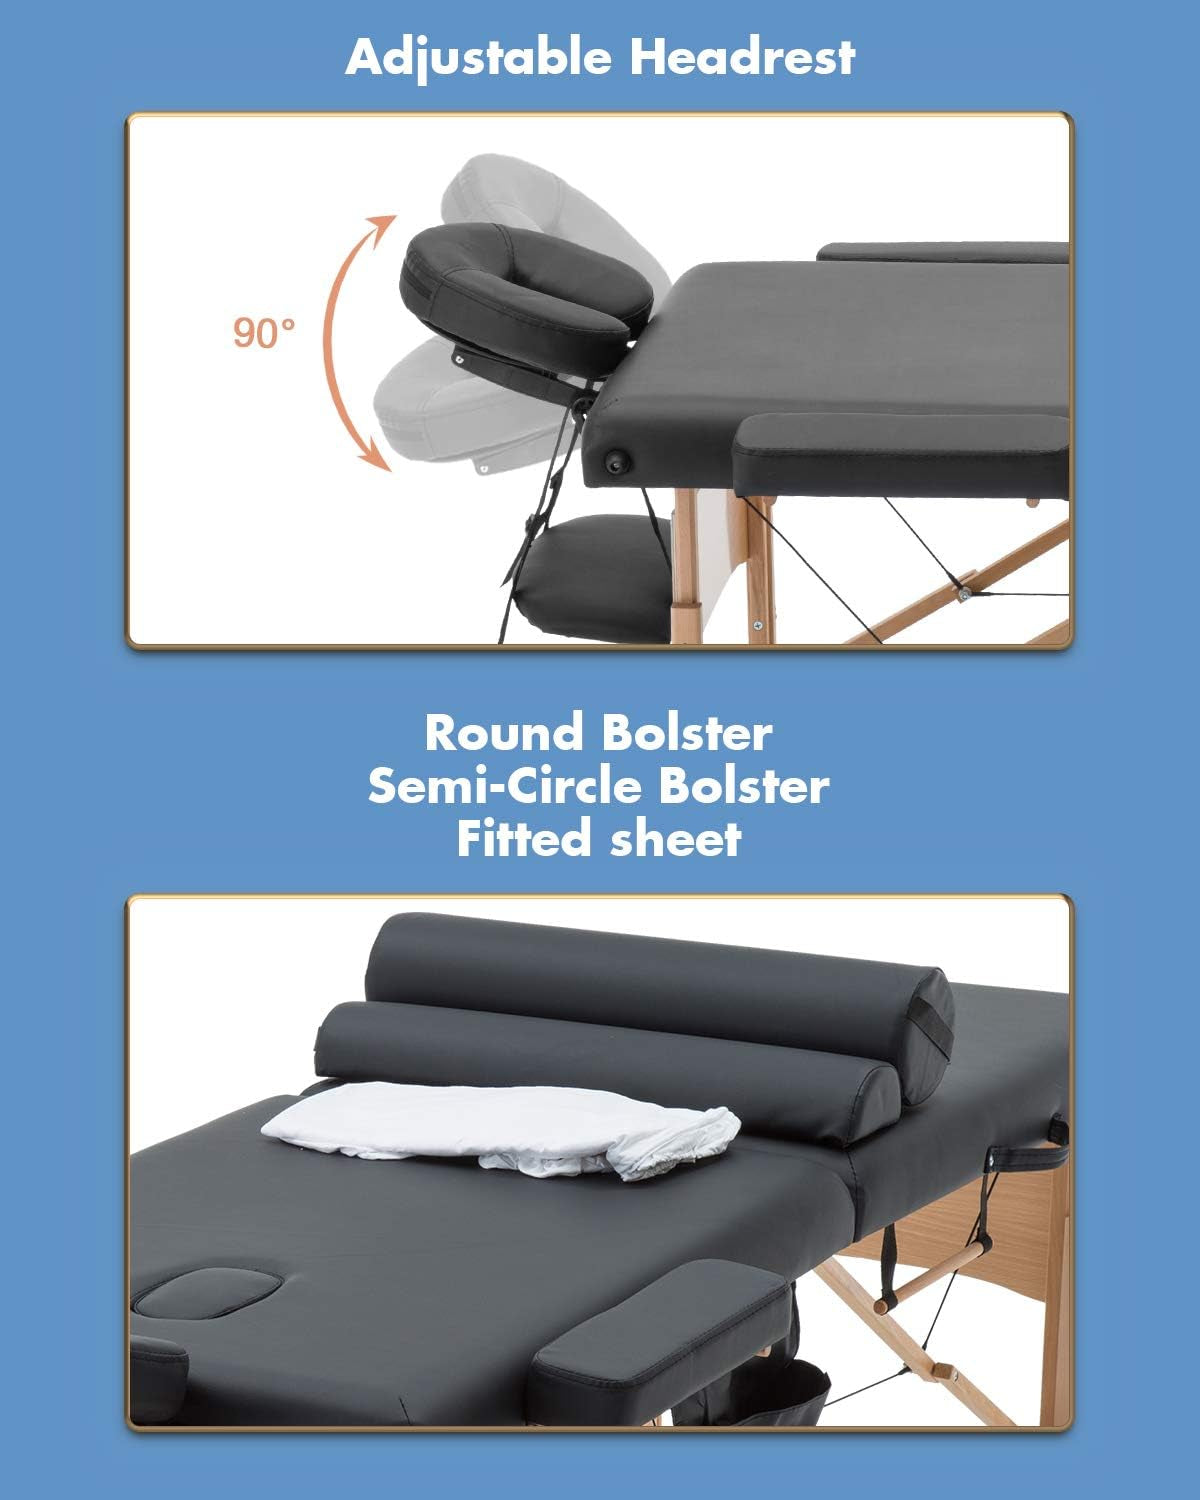 2 Bolster Hanger Massage Table Mt-Tsf2-Black, Black